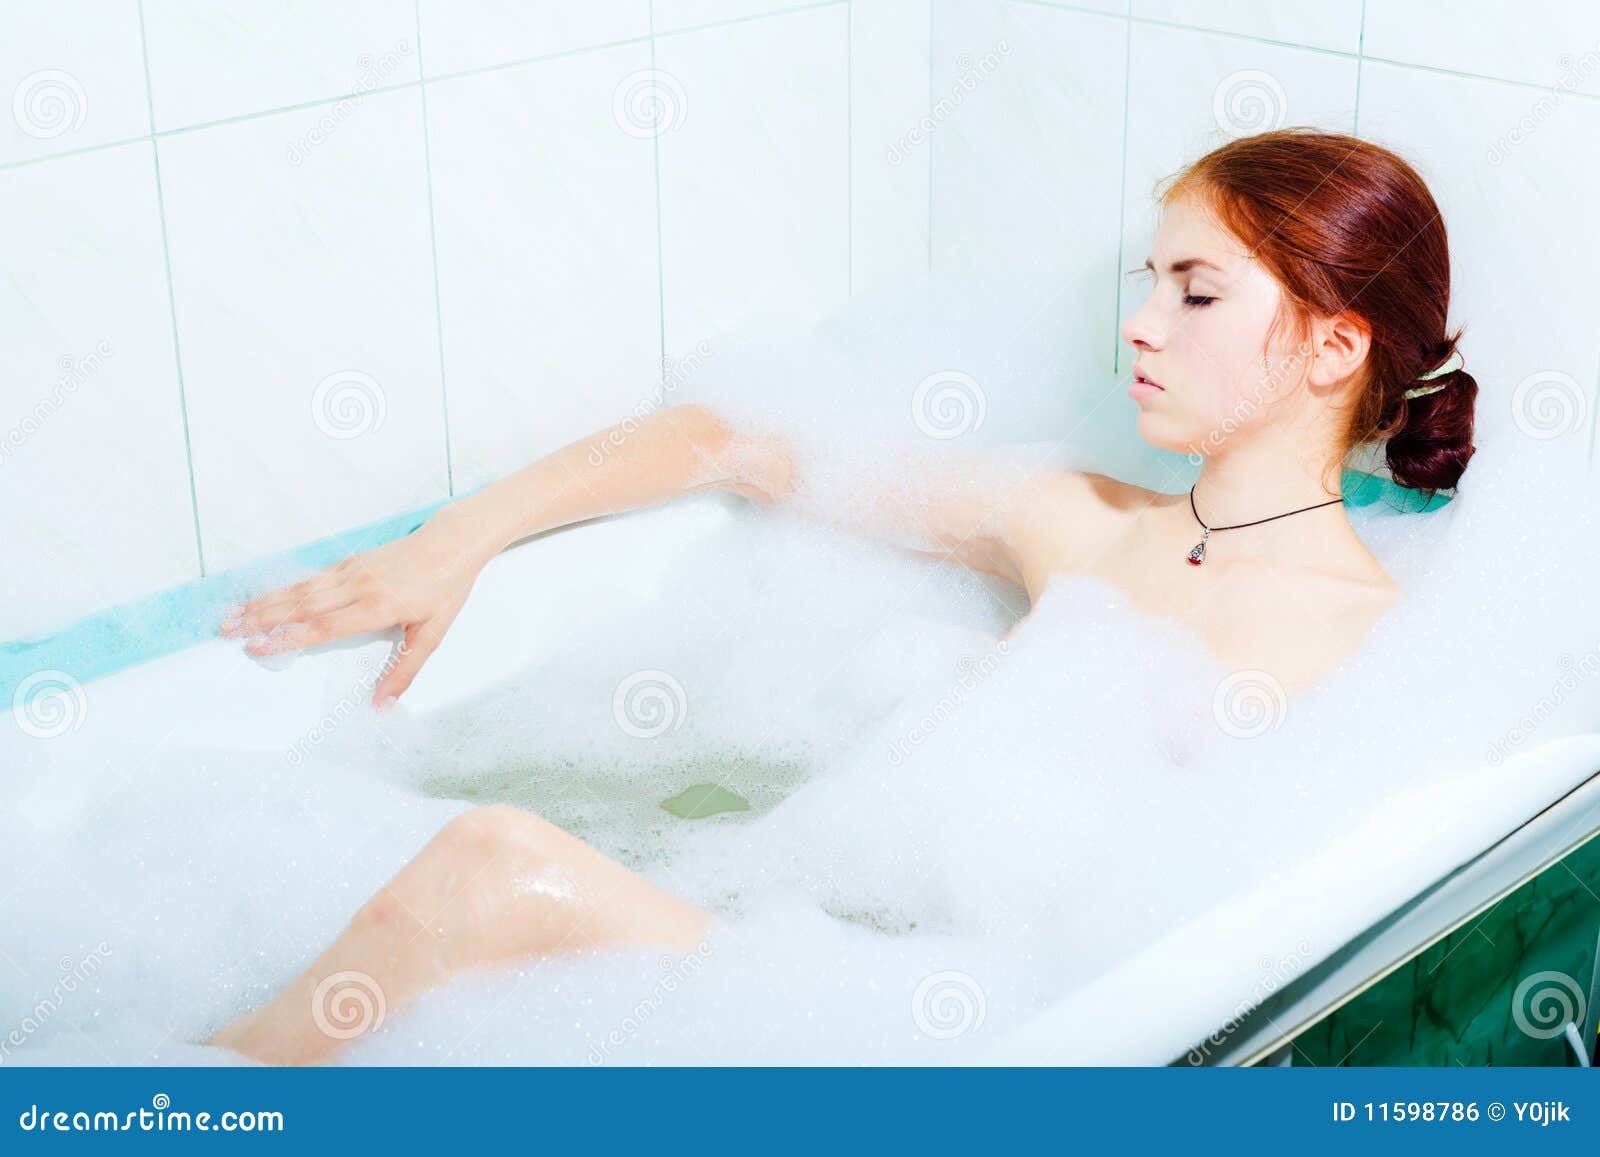 эротика голых девочек в ванной фото 51